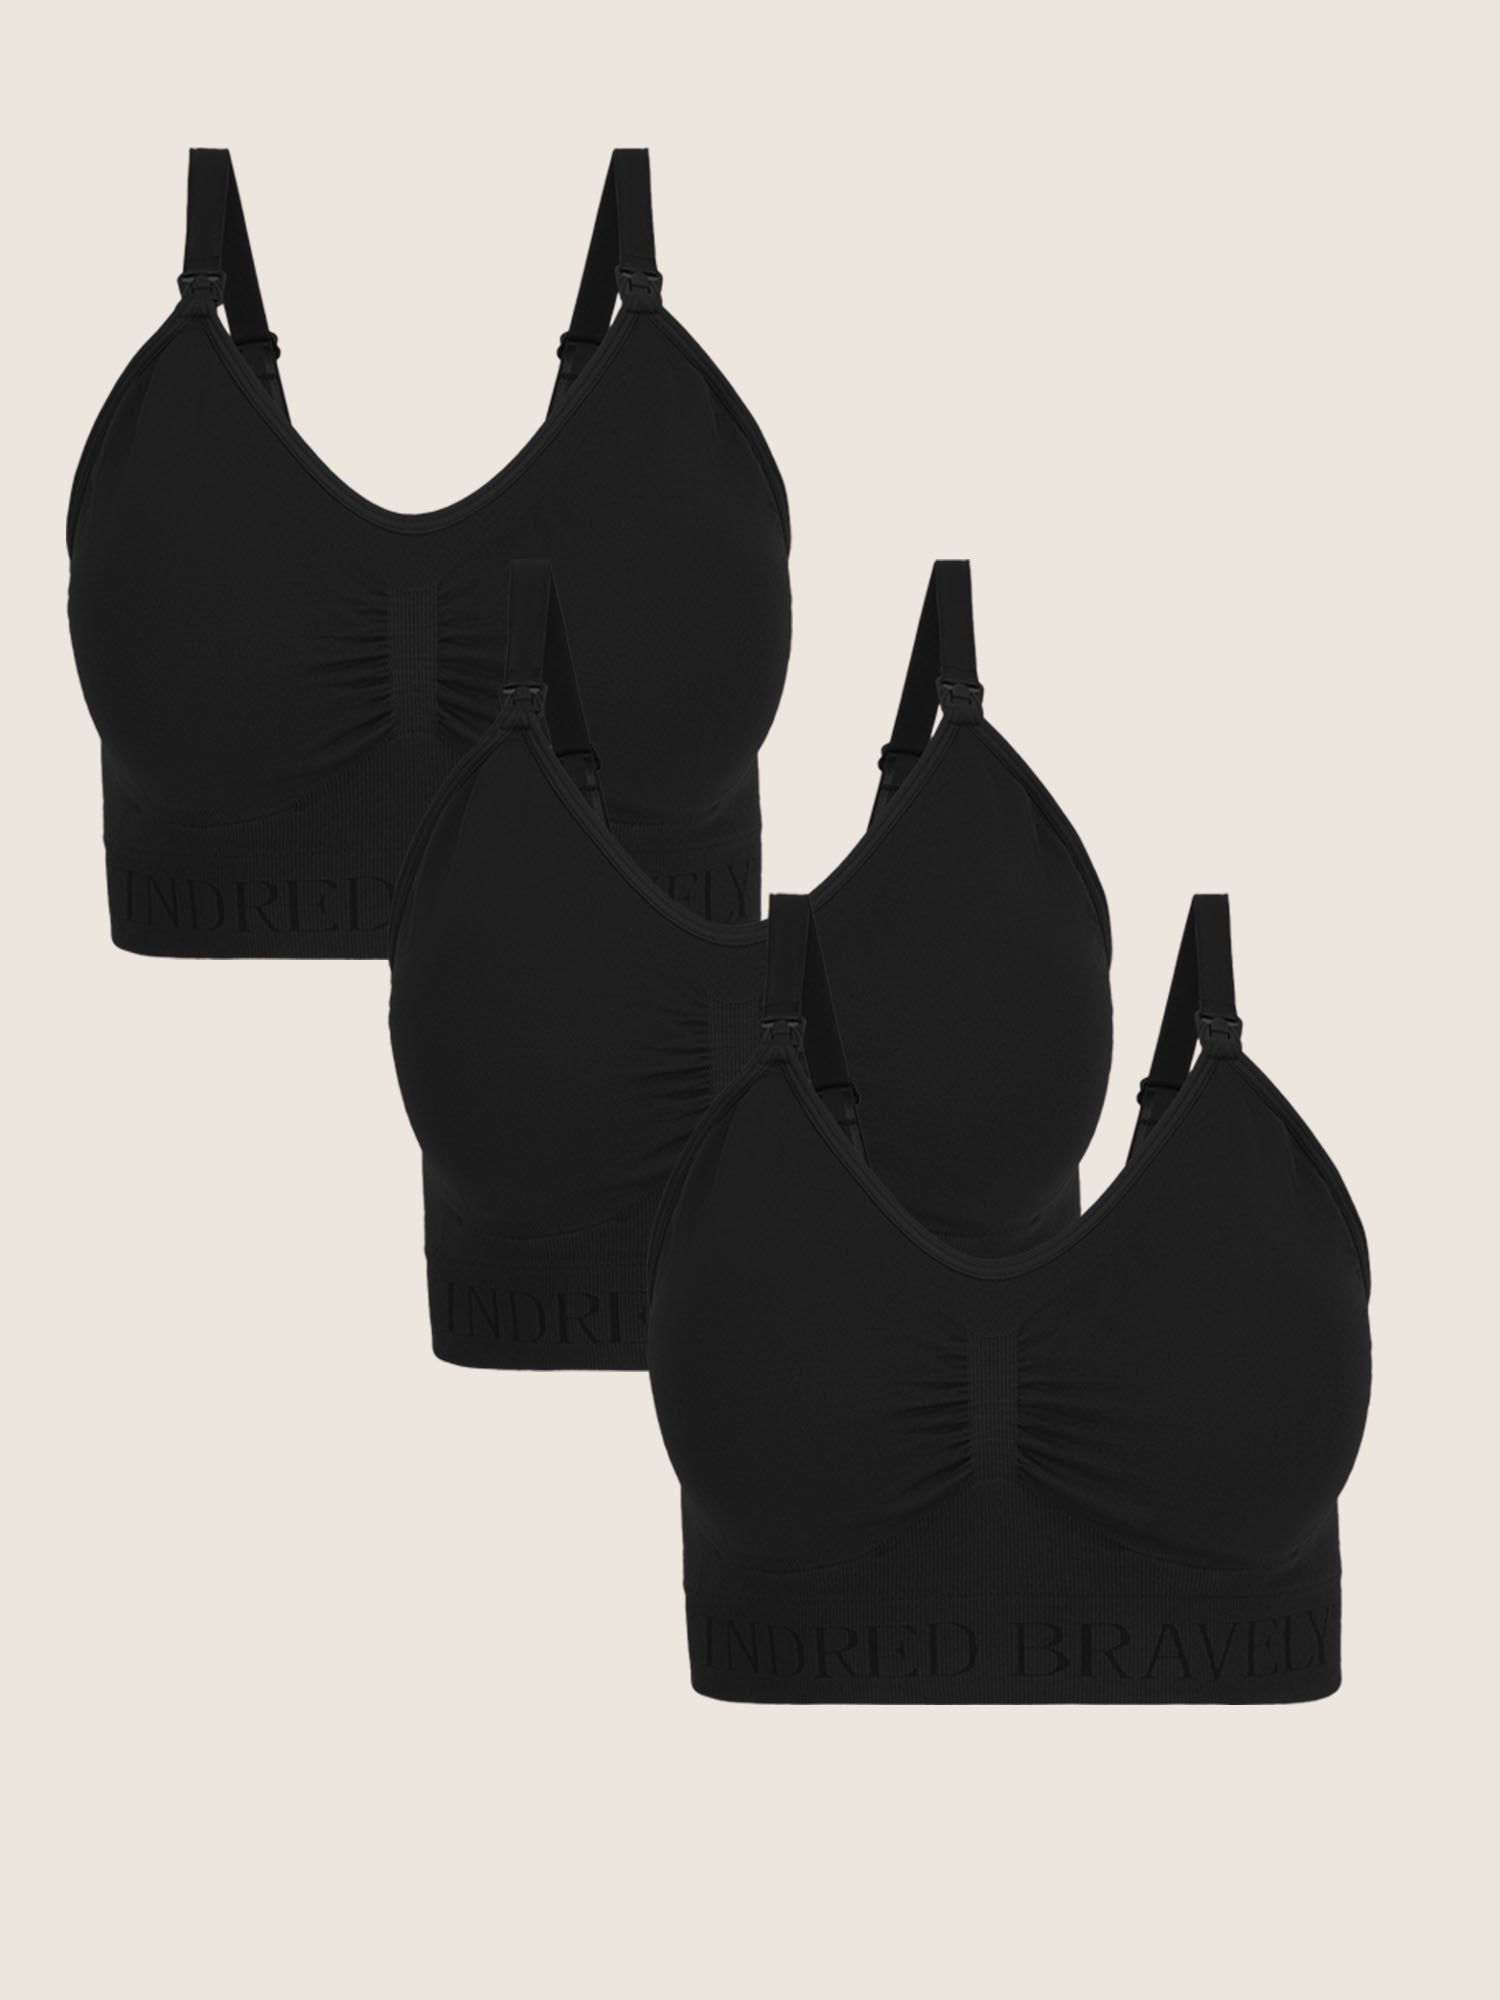 Wash Wear Spare® Nursing Bra in Black, showing three Simply Sublime® Nursing Bra in black against a beige background